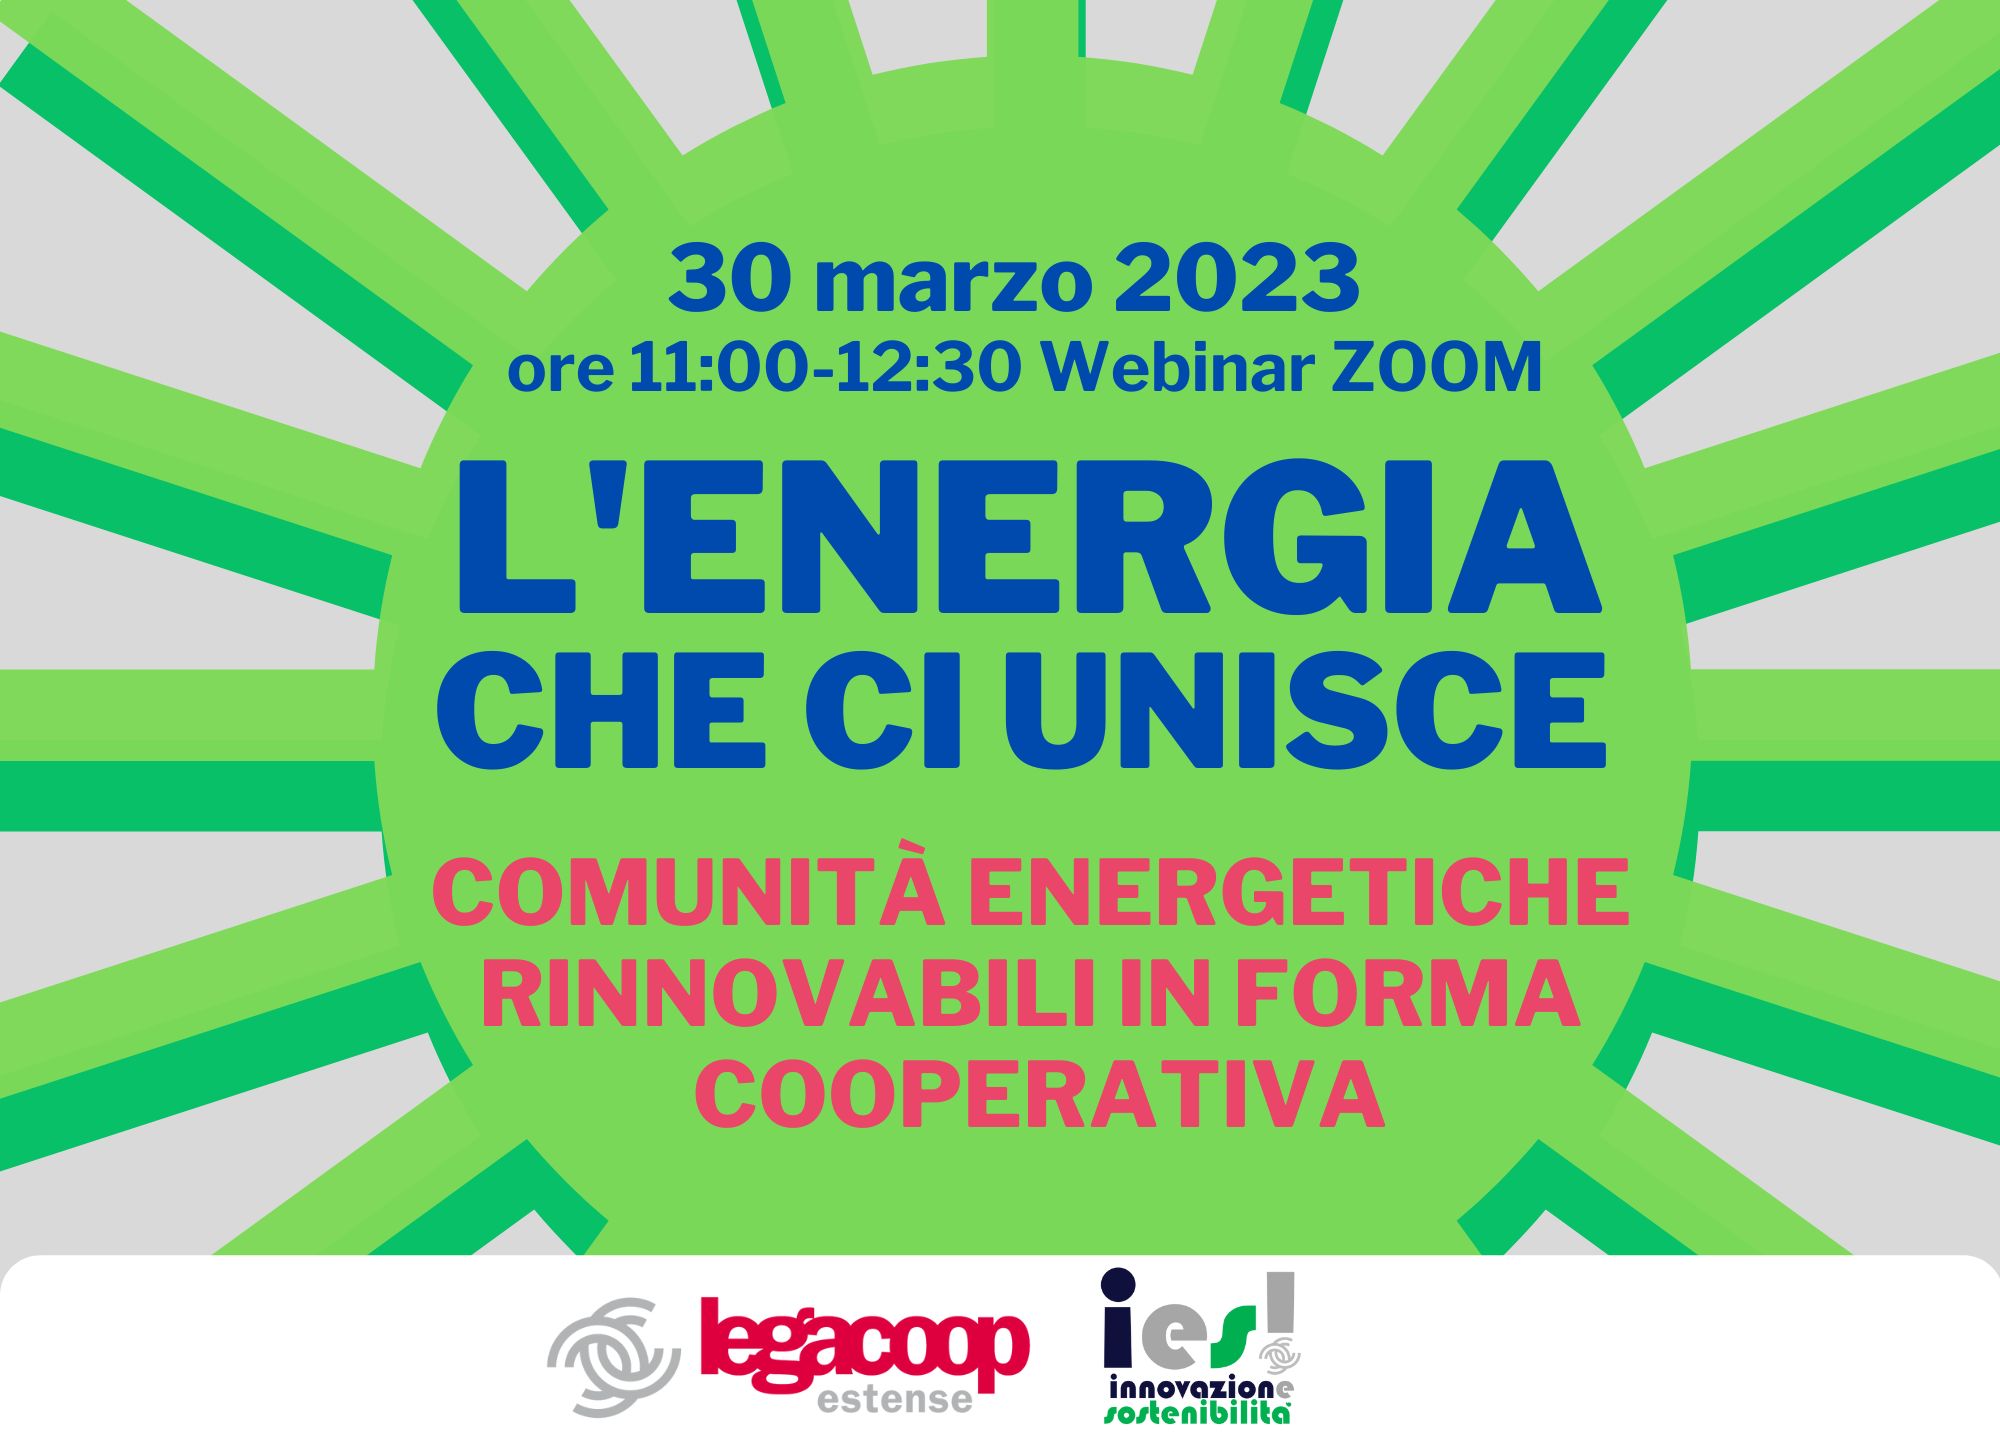 L’energia che ci unisce: il 30 marzo Legacoop Estense organizza un webinar sulle comunità energetiche rinnovabili in forma cooperativa